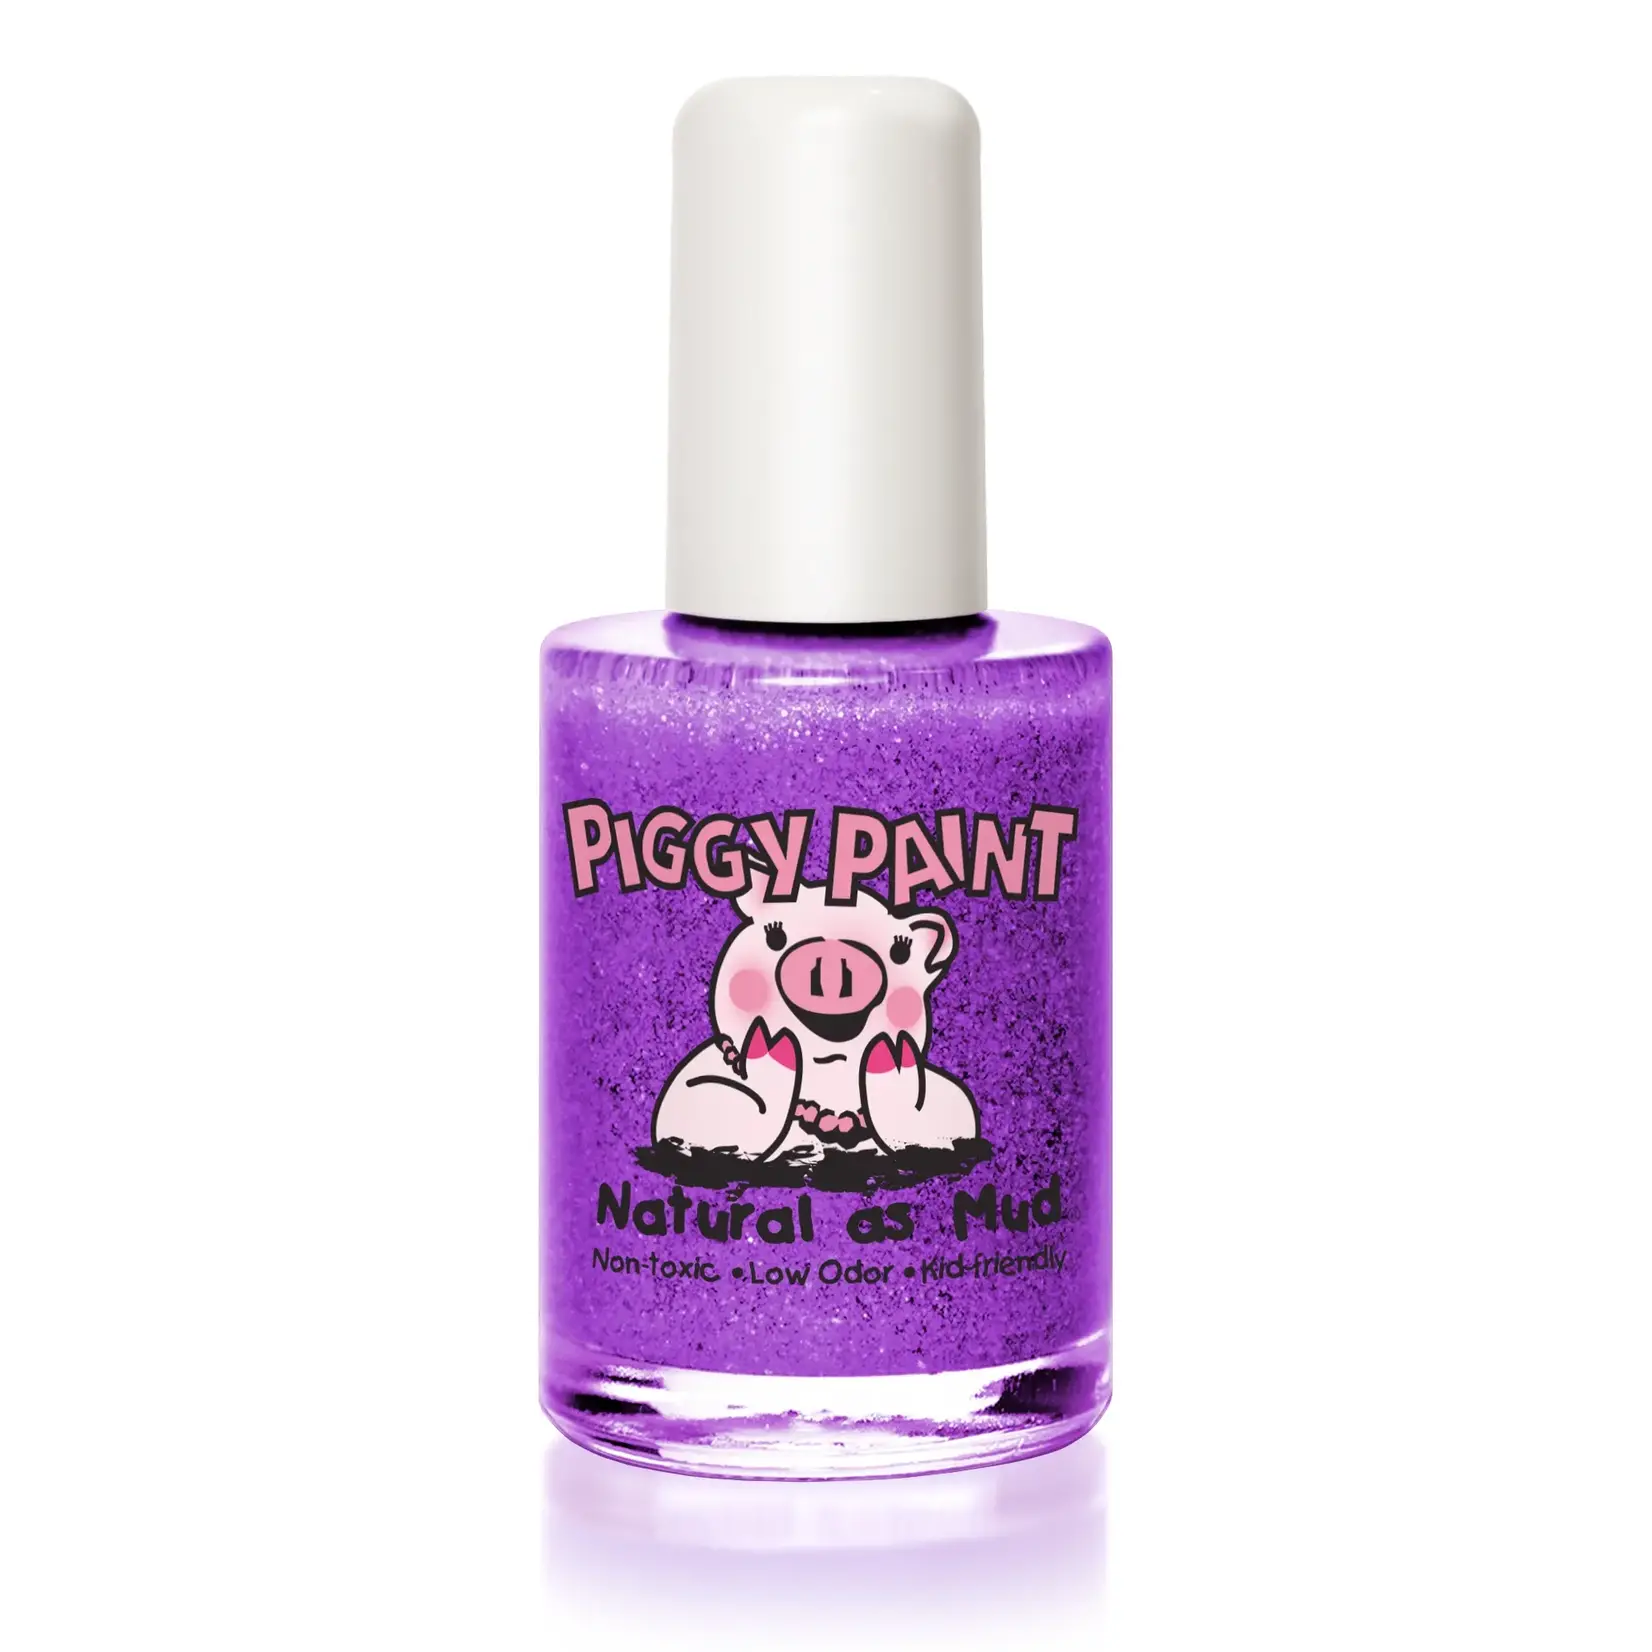 Piggy Paint Nail Polish, Let's Jam